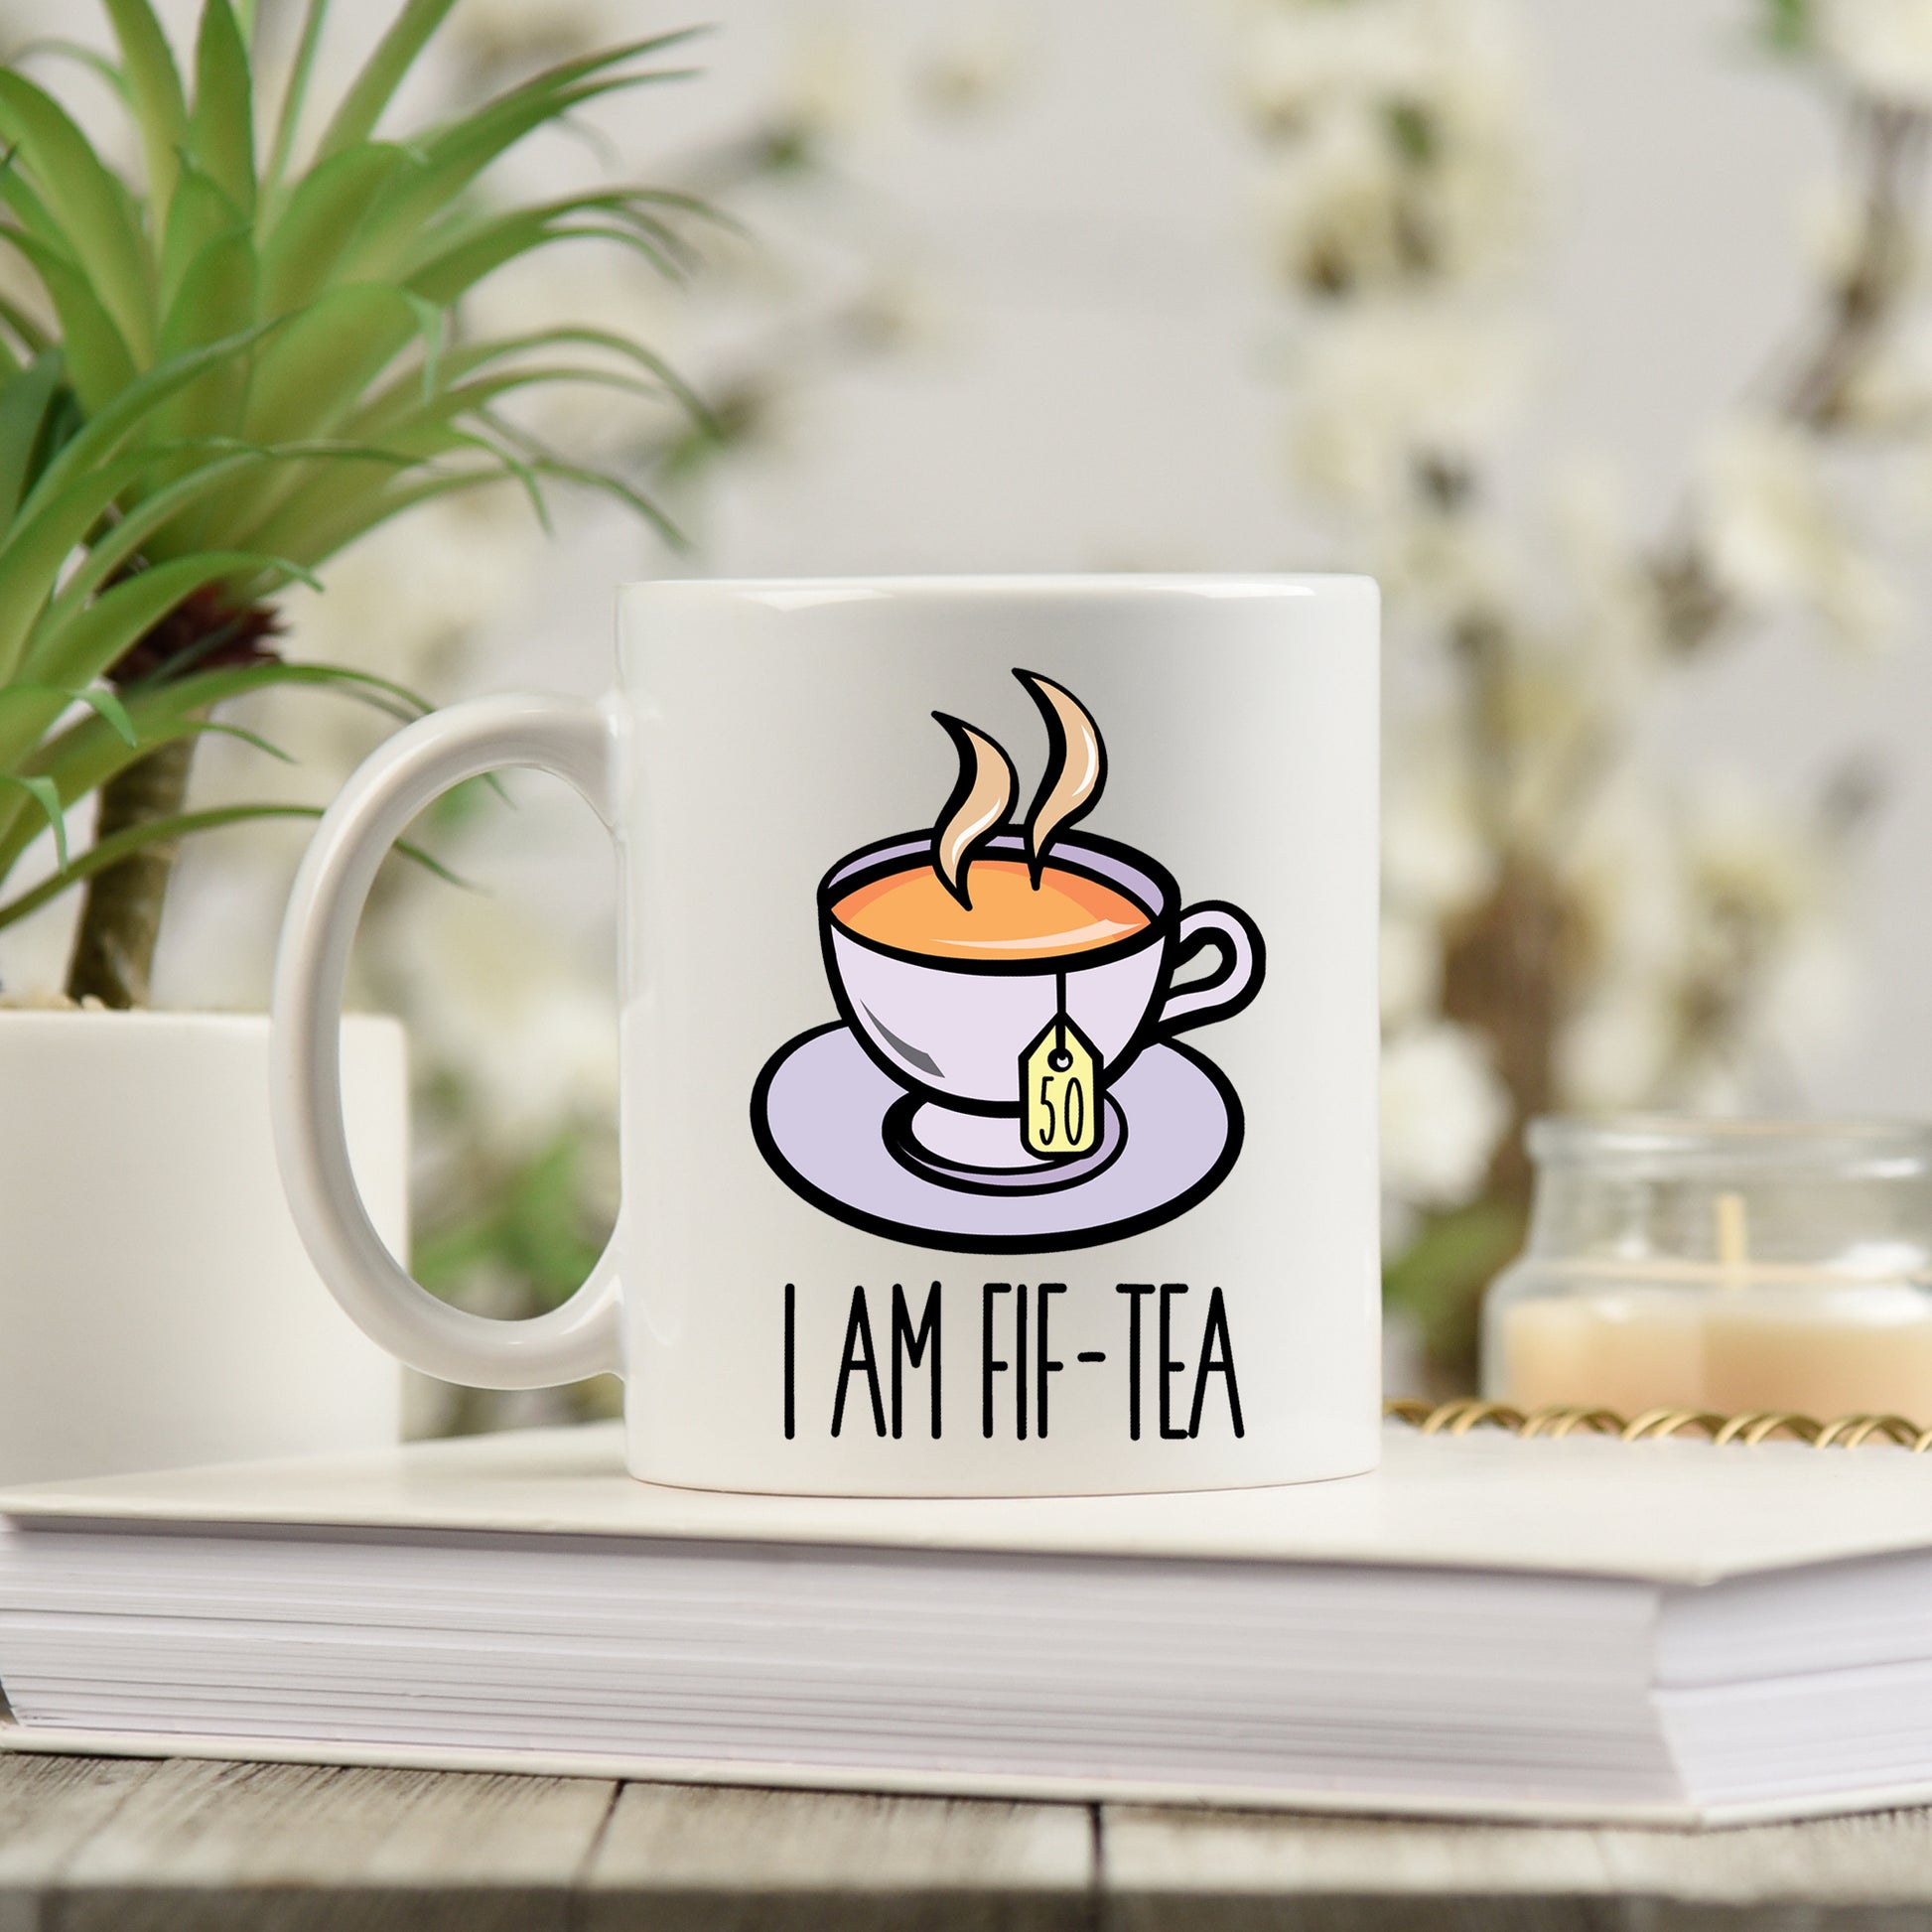 I Am Fif-Tea Funny 50th Birthday Mug Gift for Tea Lovers  - Always Looking Good -   